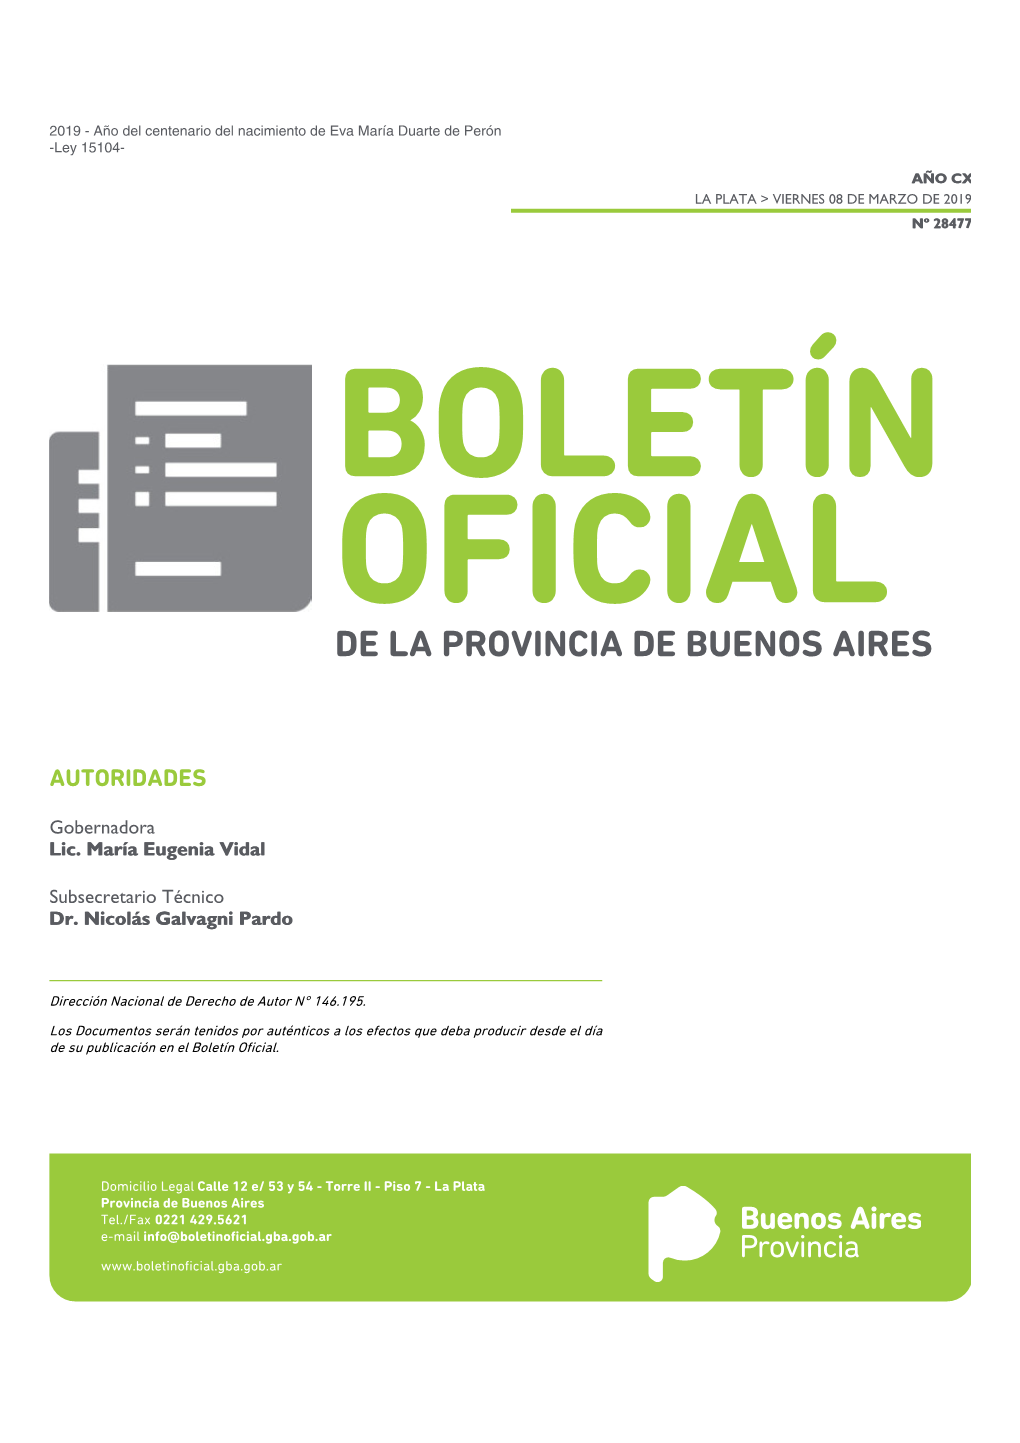 BOLETÍN OFICIAL DE LA PROVINCIA DE BUENOS AIRES La Plata > Viernes 08 De Marzo De 2019